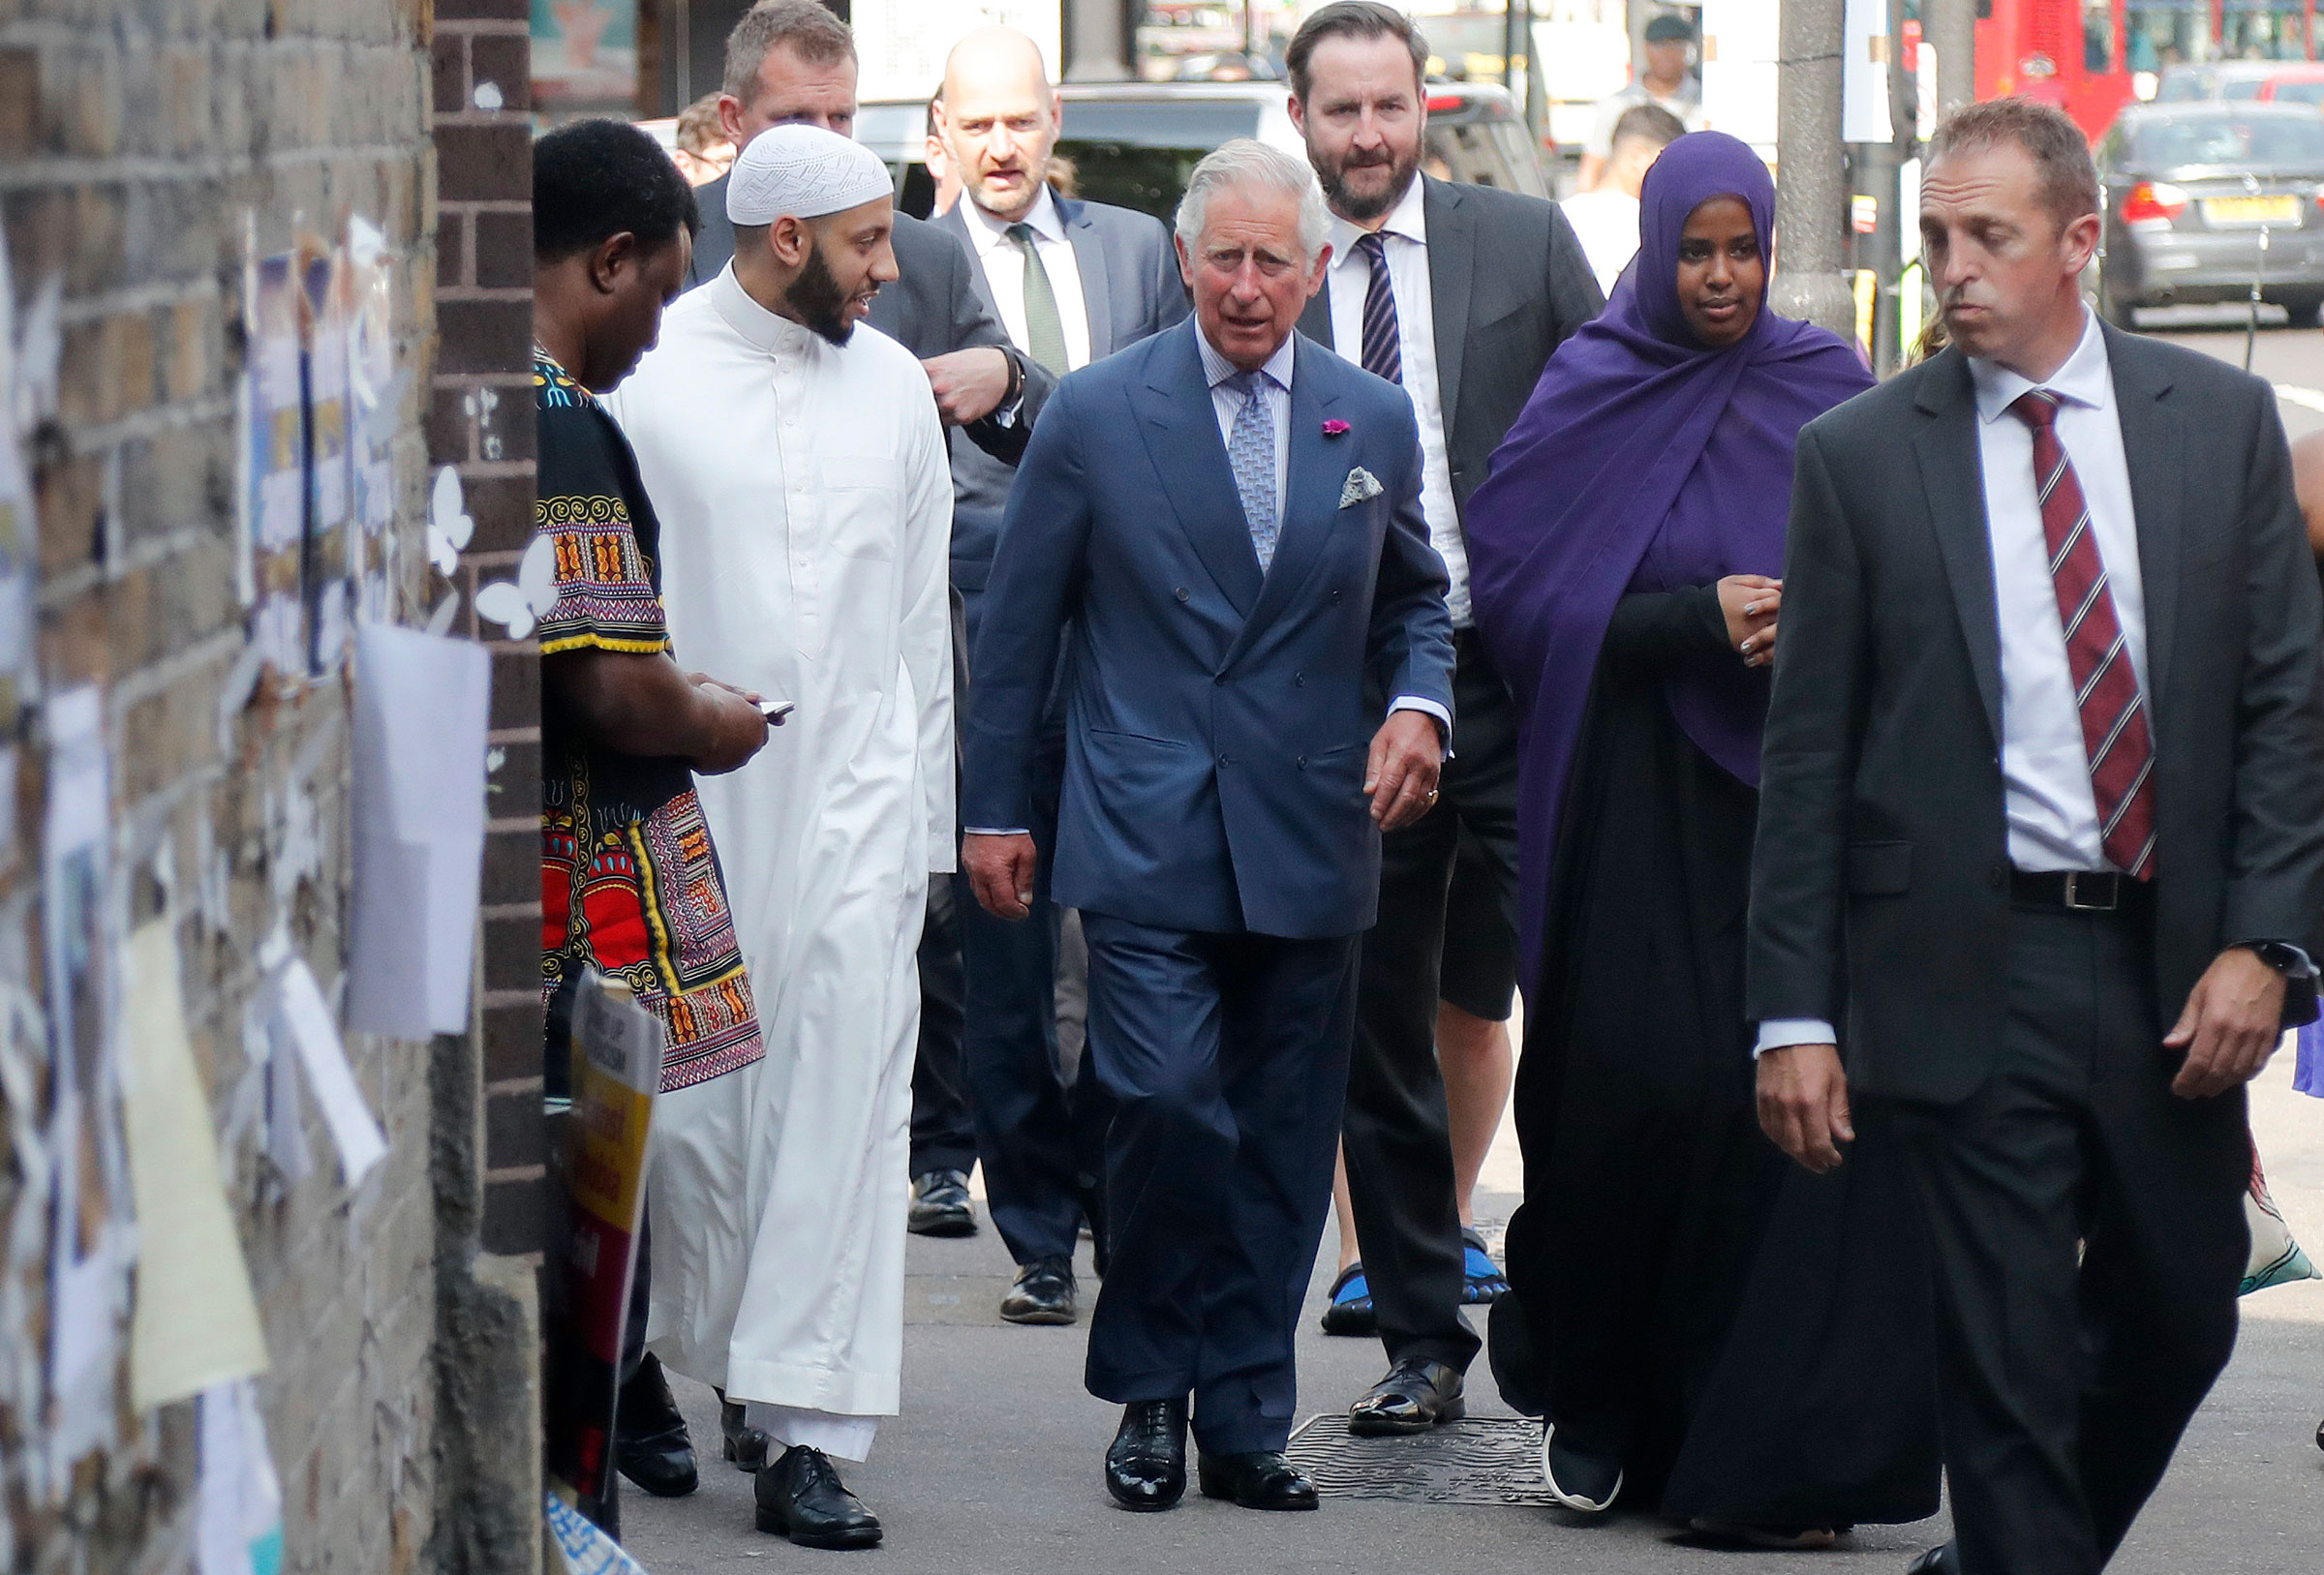 El rey Carlos III, centro, habla con el líder musulmán Mohammed Mahmoud mientras visita la Casa de Bienestar Musulmán, Finsbury Park, para reunirse con miembros de la comunidad local y escuchar sobre la respuesta de la comunidad tras los recientes ataques extremistas en Londres, el 21 de junio de 2017. (Frank Augstein—AP)